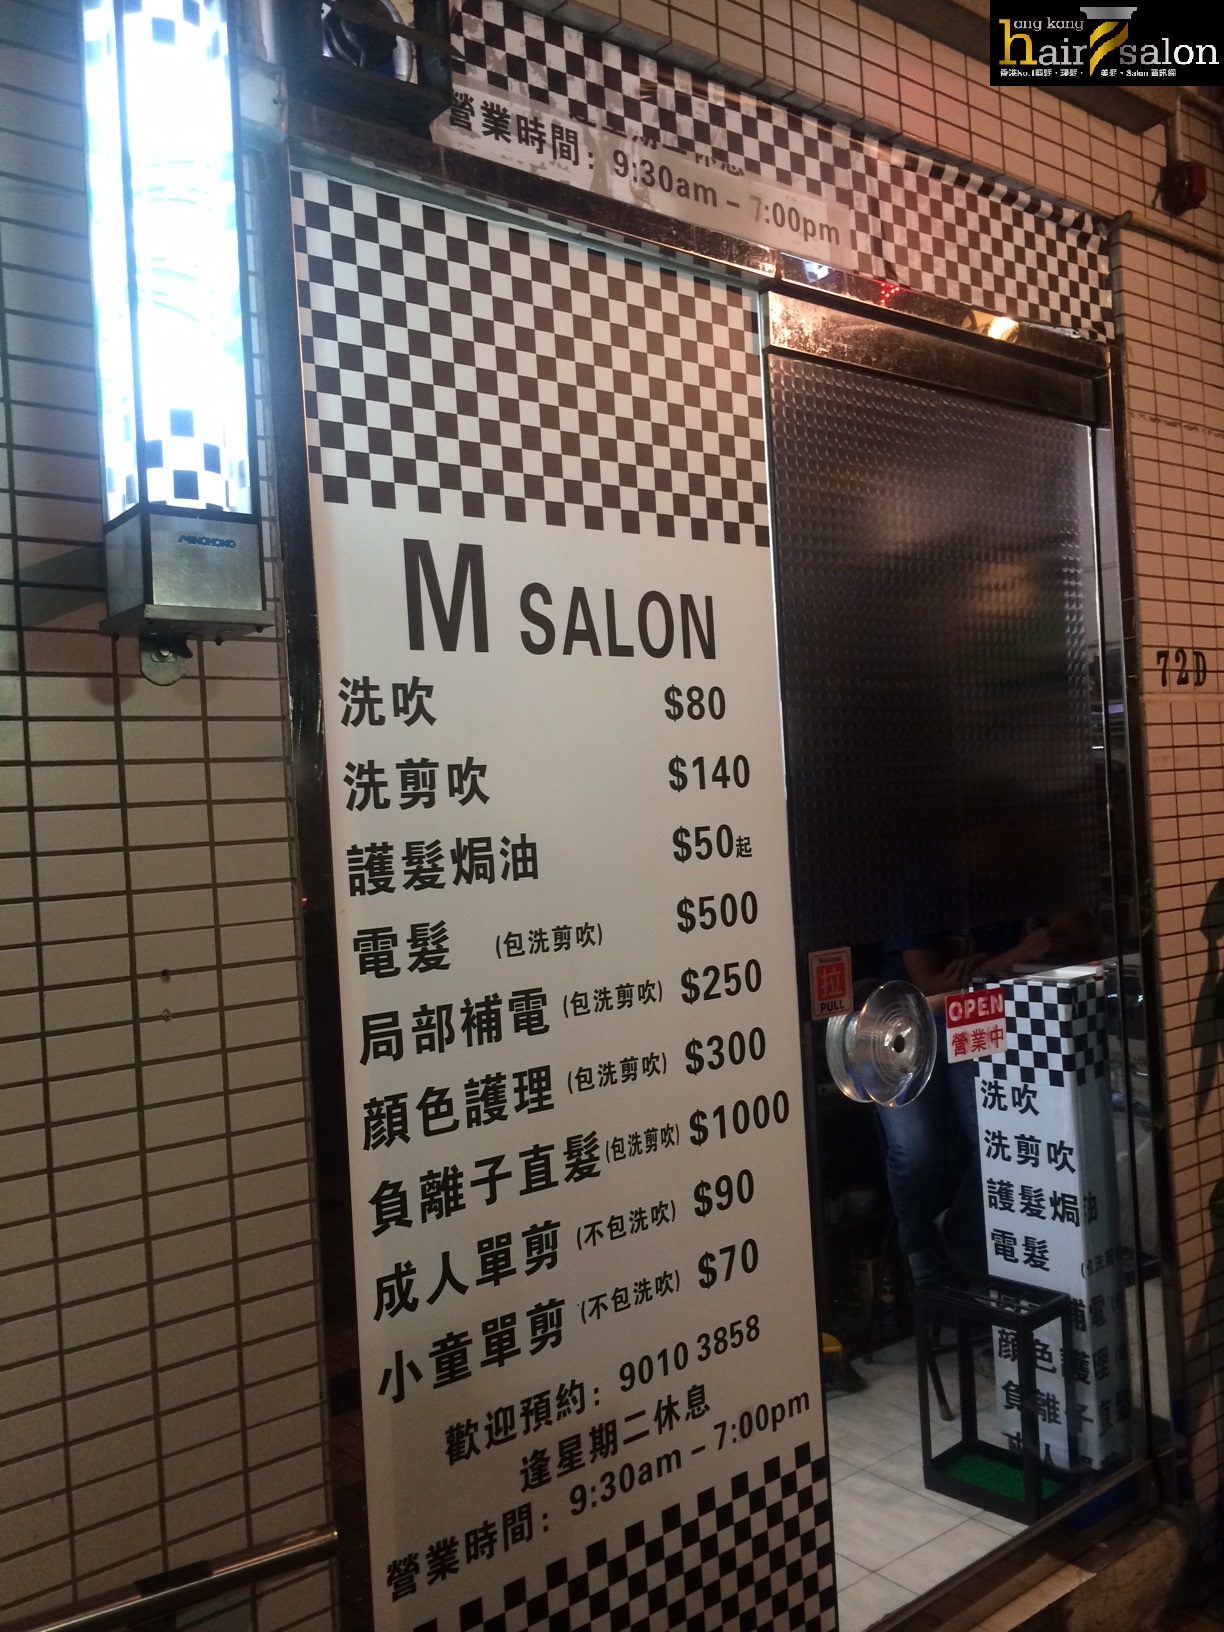 Hair Colouring: M Salon